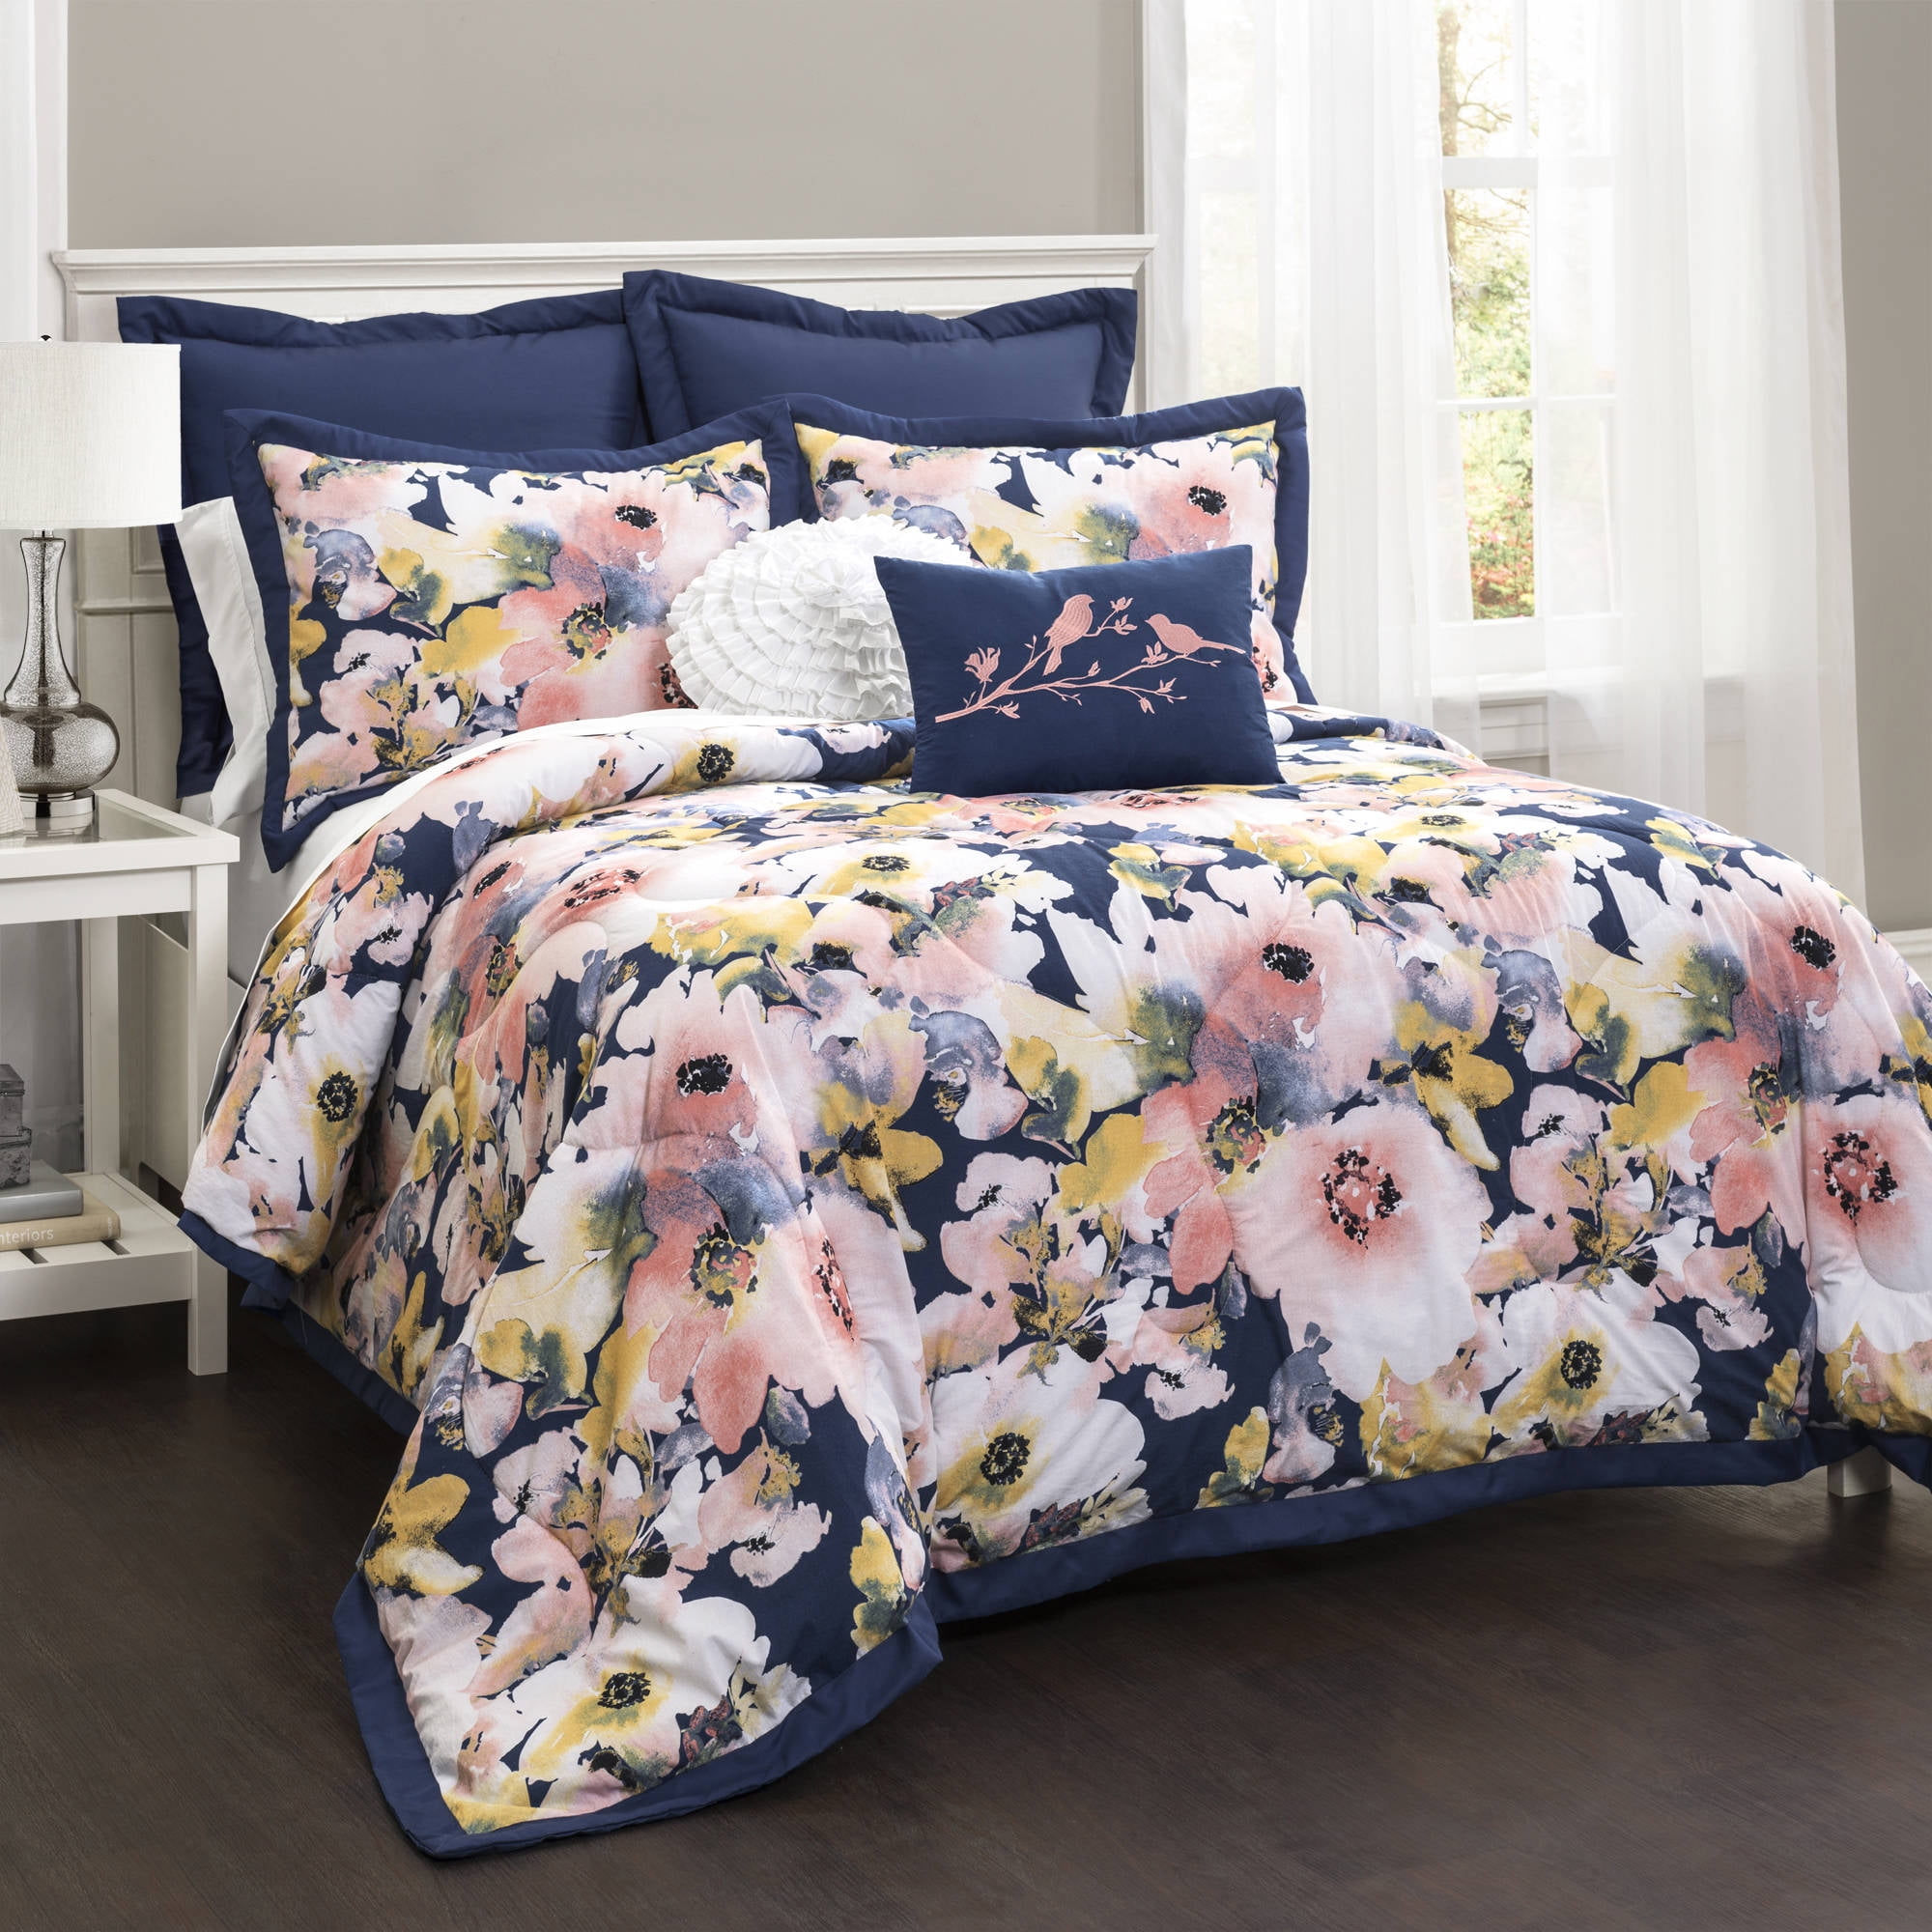 Full/Queen 7pc Floral Watercolor Comforter Set Blue - Lush Décor